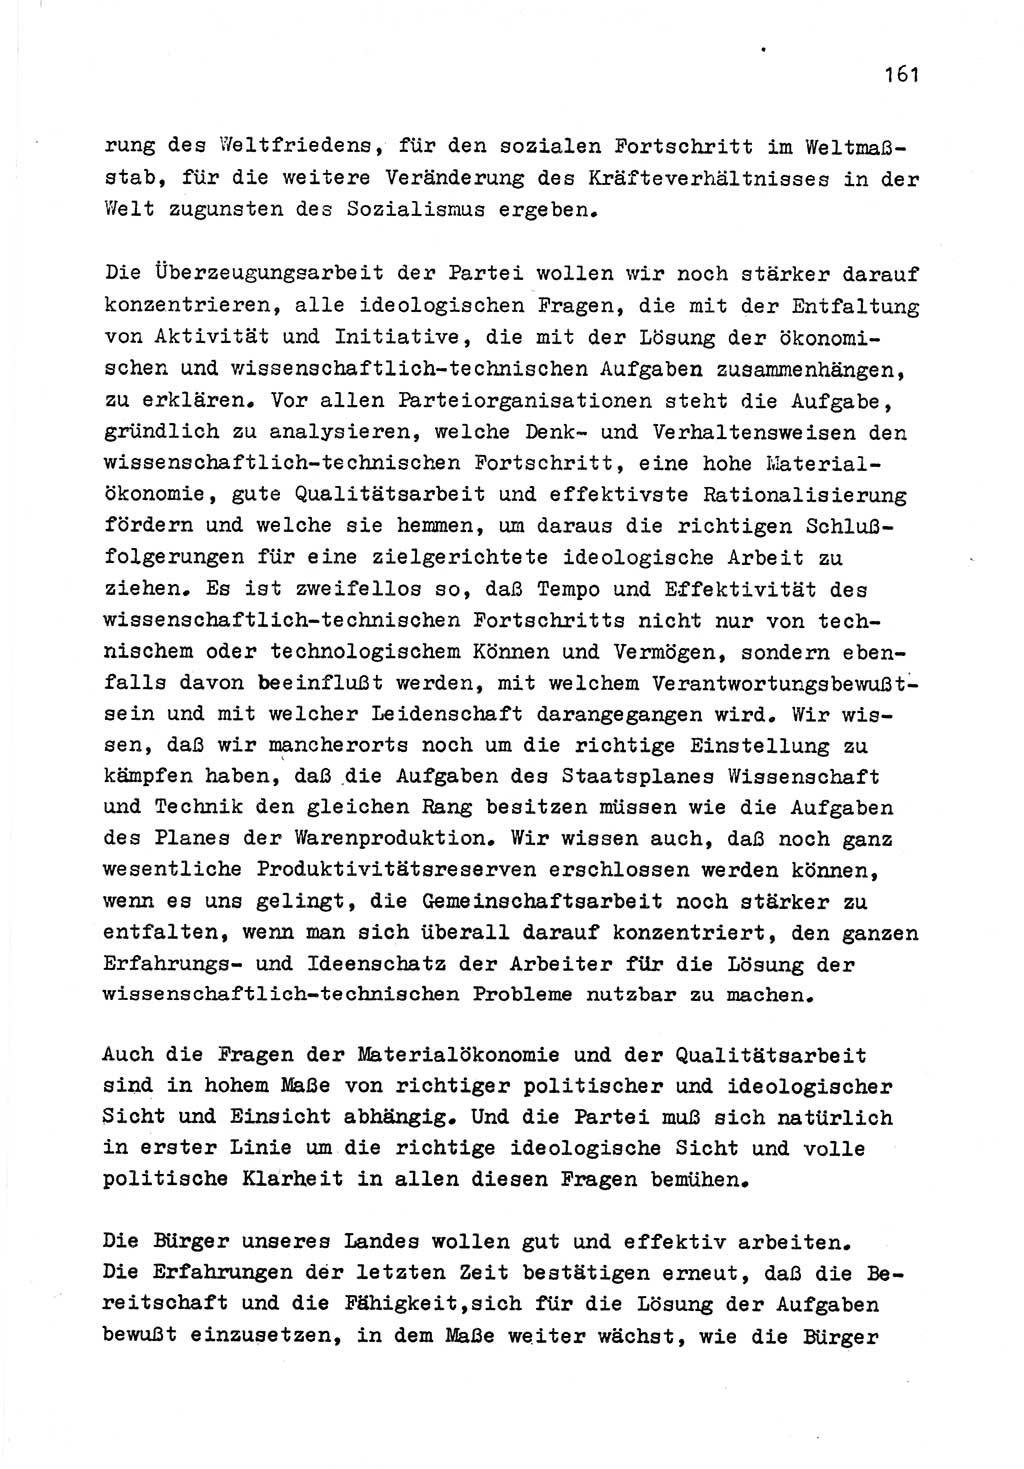 Zu Fragen der Parteiarbeit [Sozialistische Einheitspartei Deutschlands (SED) Deutsche Demokratische Republik (DDR)] 1979, Seite 161 (Fr. PA SED DDR 1979, S. 161)